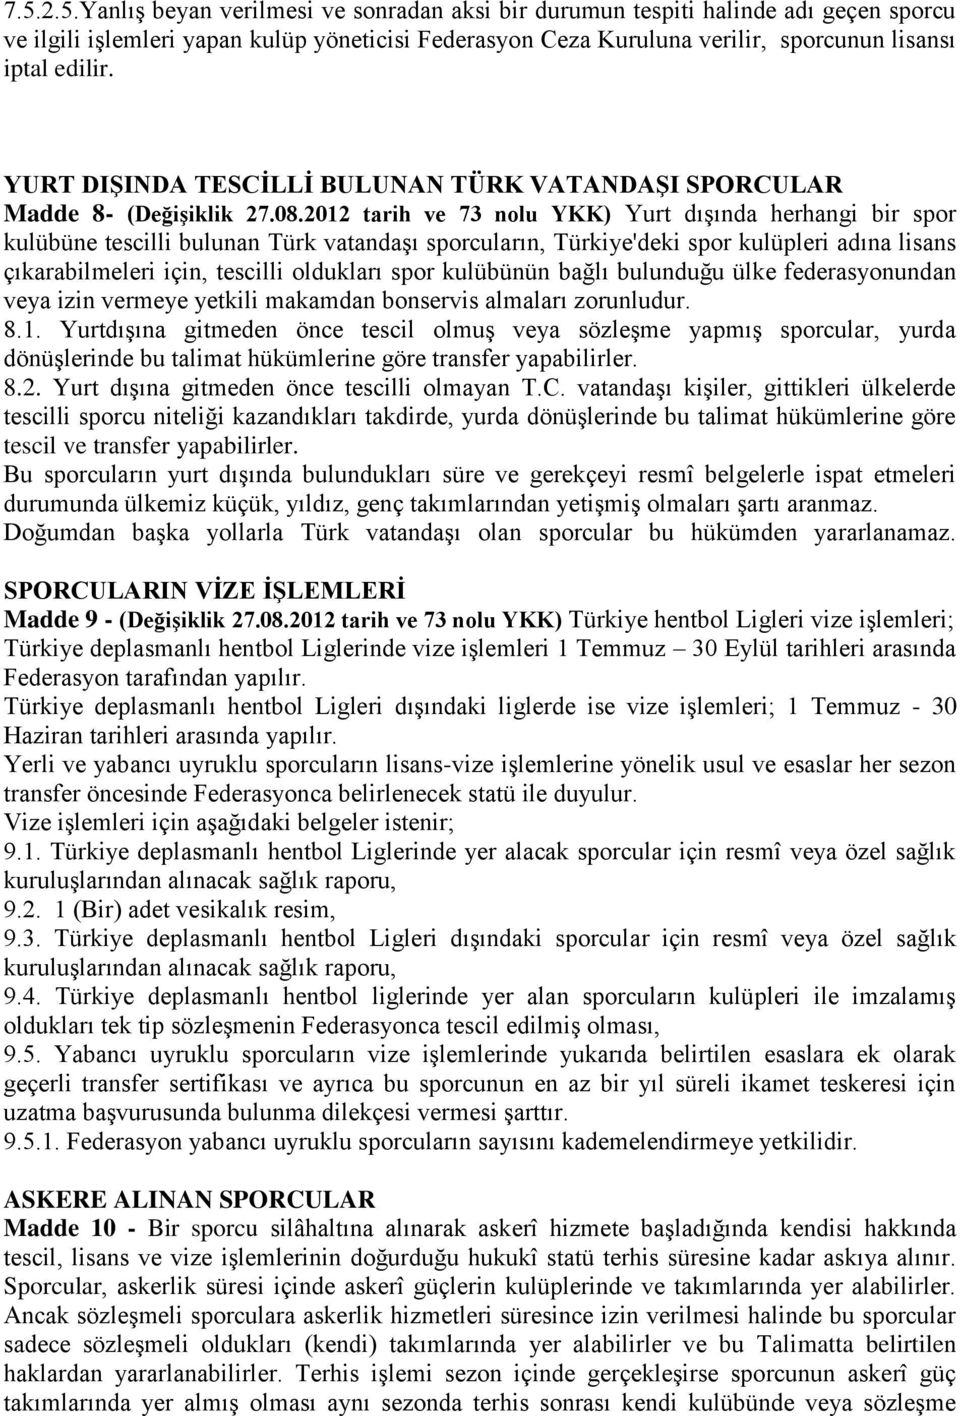 2012 tarih ve 73 nolu YKK) Yurt dışında herhangi bir spor kulübüne tescilli bulunan Türk vatandaşı sporcuların, Türkiye'deki spor kulüpleri adına lisans çıkarabilmeleri için, tescilli oldukları spor